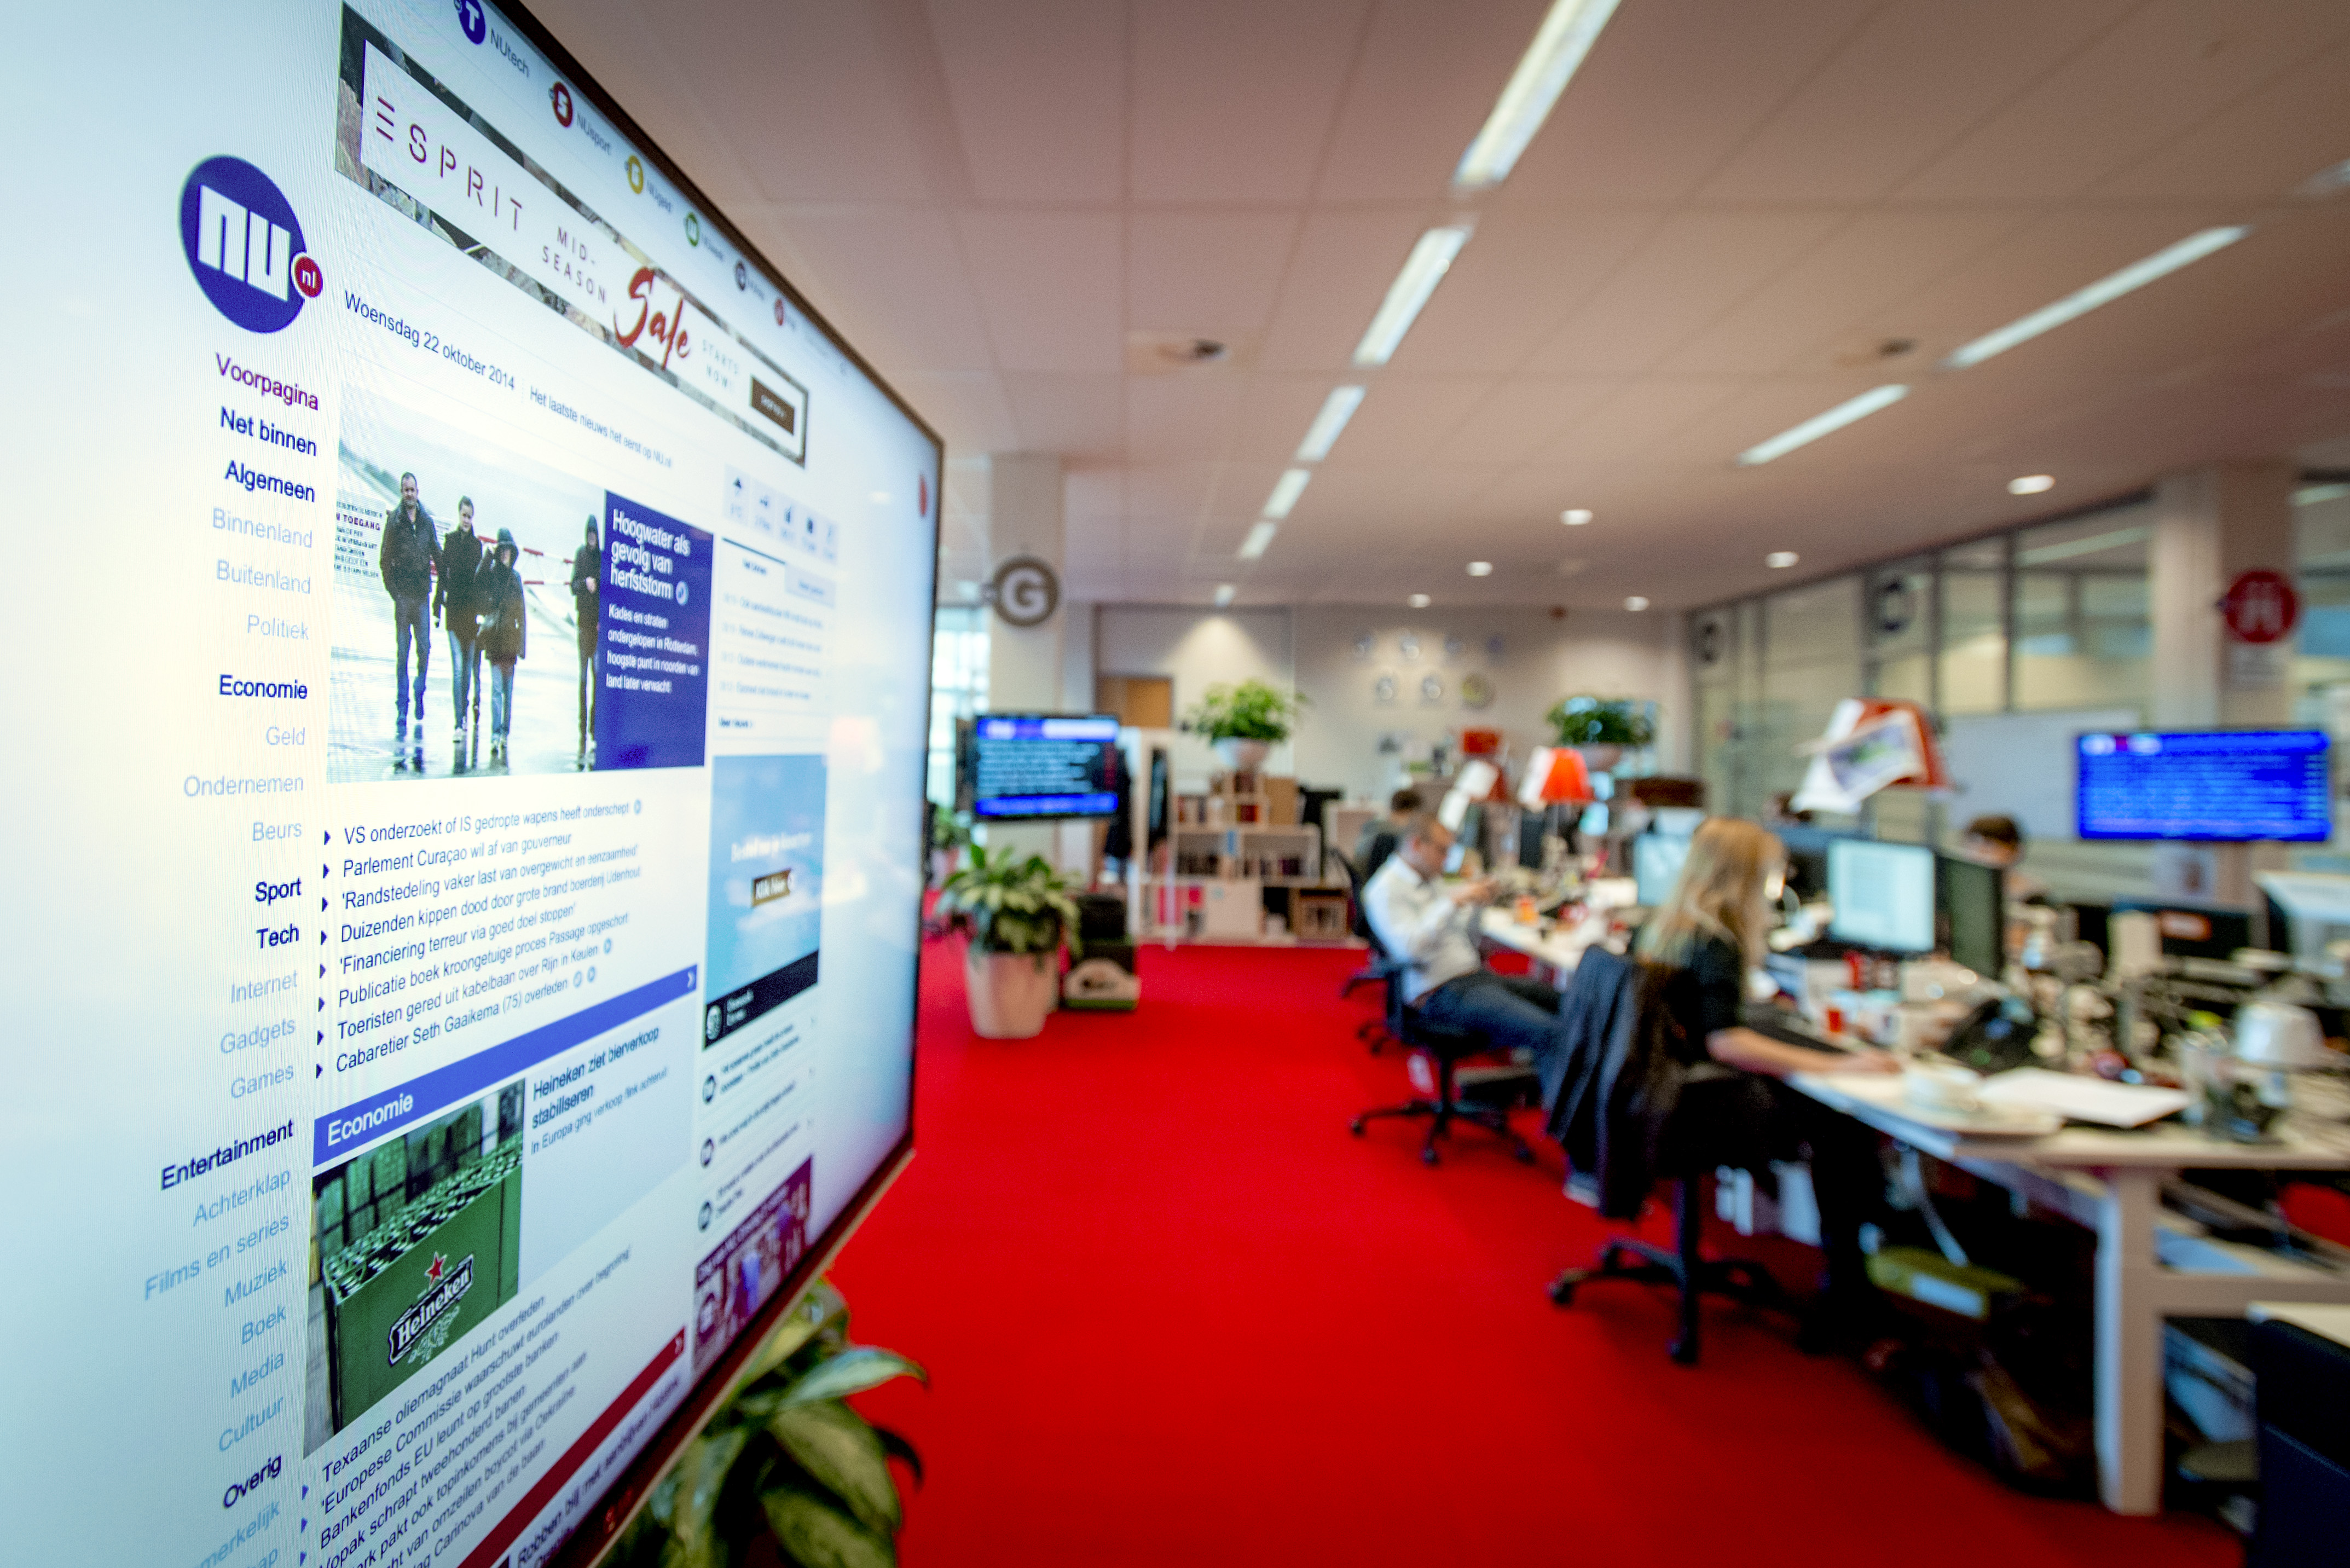 2014-10-22 09:59:29 HOOFDDORP - De redactie van NU.nl vlak voor de lancering van de vernieuwde site. NU.nl is sinds 1999 uitgegroeid tot het grootste digitale nieuwsmedium van Nederland dat op site en apps, dagelijks 3 miljoen bezoekers bereikt. ANP ROBIN VAN LONKHUIJSEN